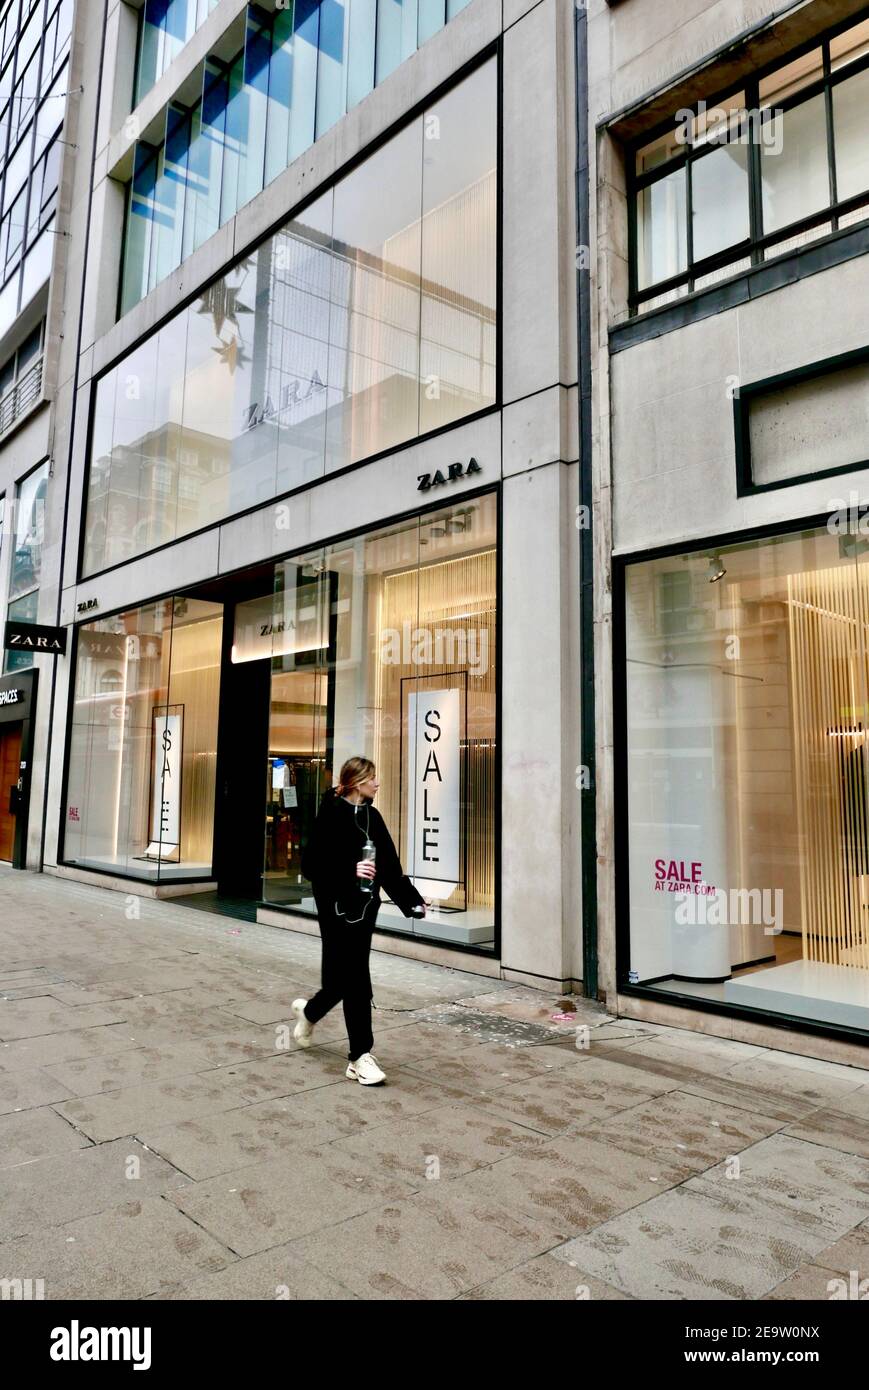 Eine junge Frau geht an Zara Bekleidungsgeschäft derzeit geschlossen wegen covid19 Pandemie Sperrung, die Auswirkungen auf die Wirtschaft. Regent Street, London, Großbritannien Stockfoto